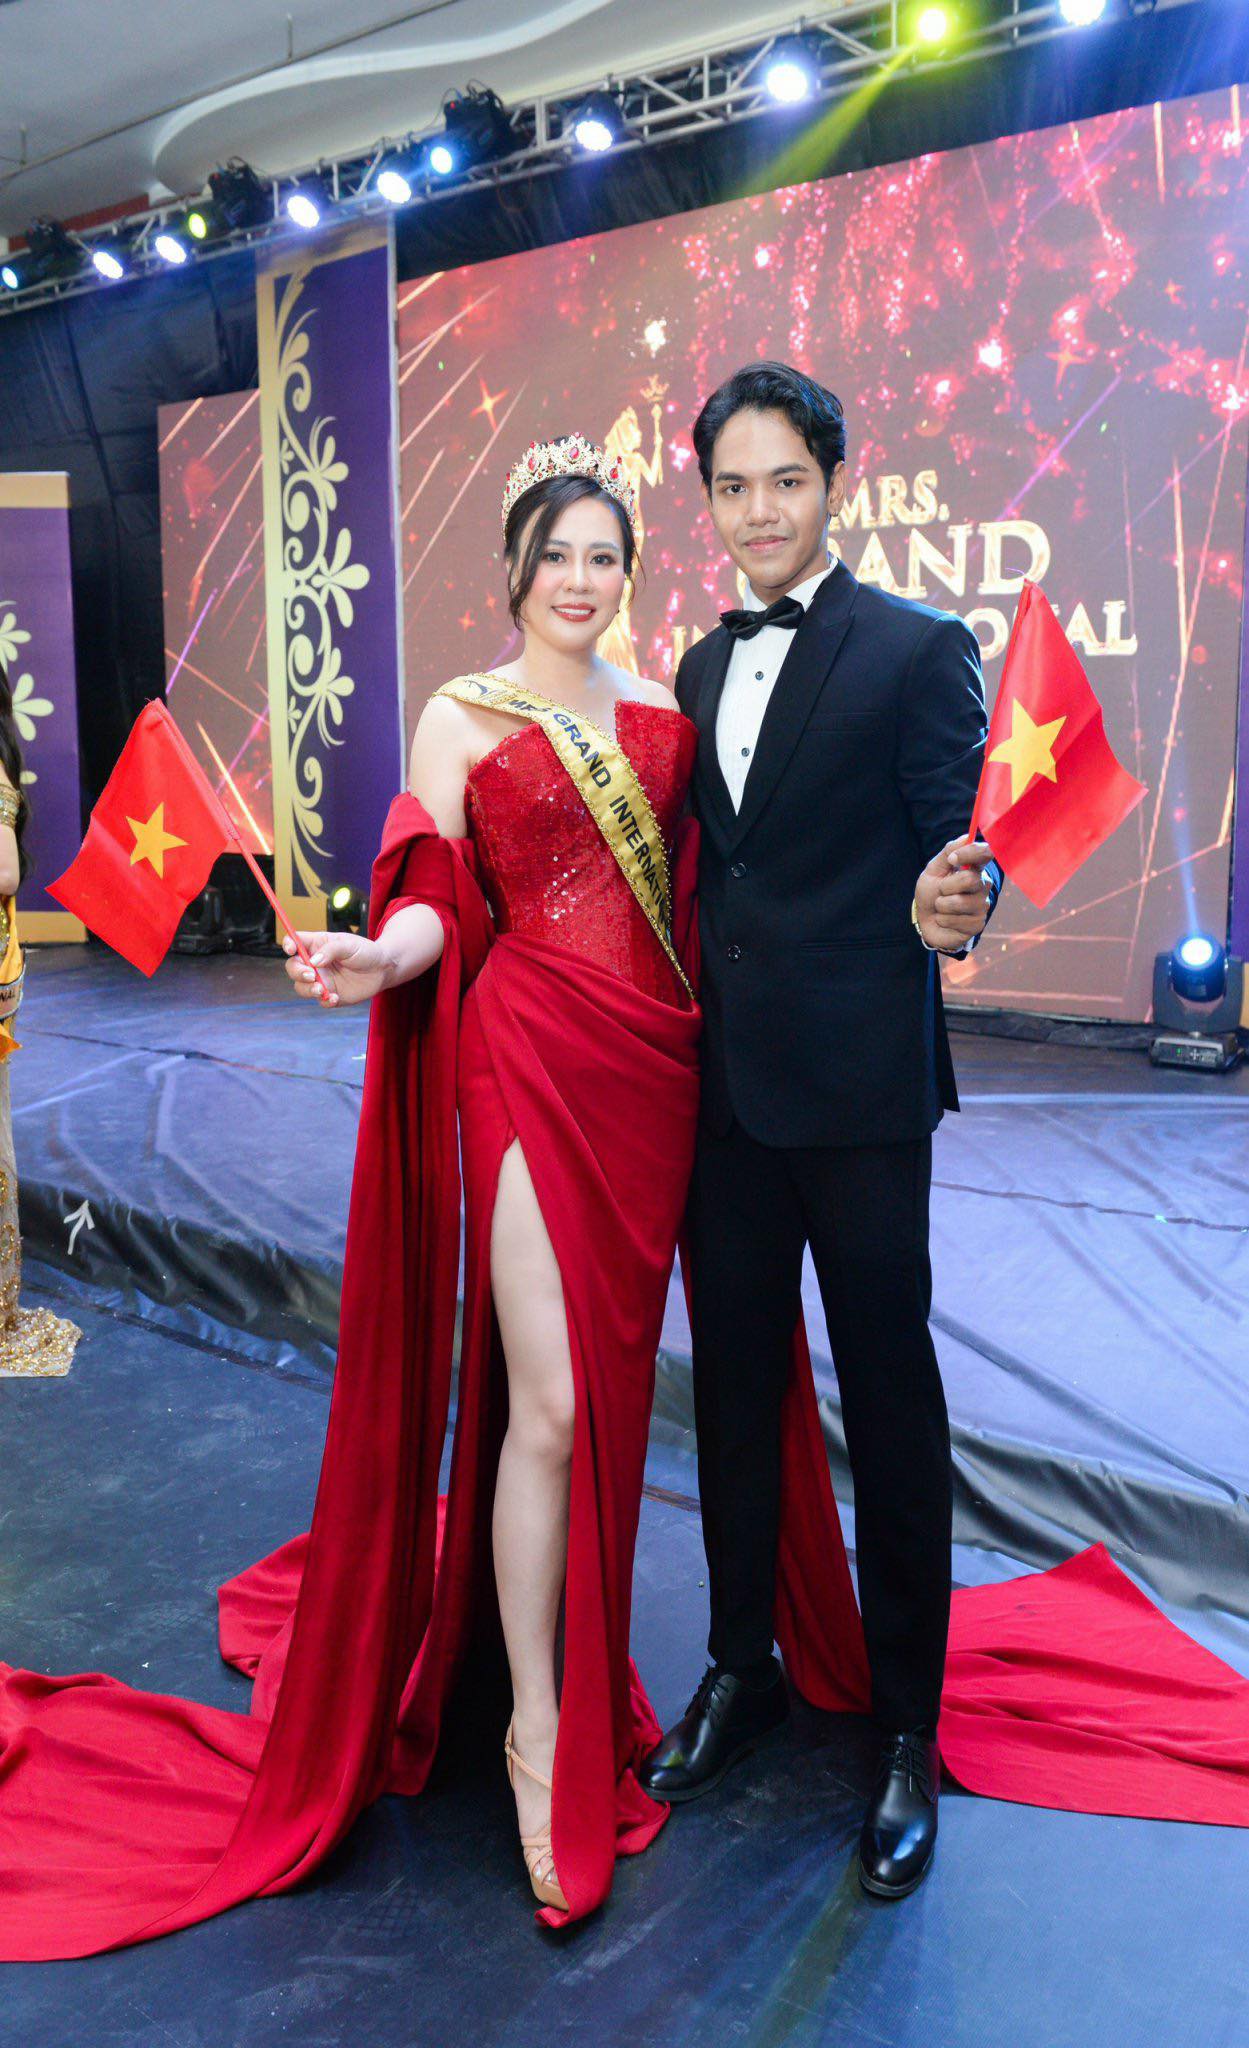 Hoa hậu Phan Kim Oanh chụp hình kỷ niệm với ông Khun Hset Han - Chủ tịch Mrs Grand International. Ảnh: Nhân vật cung cấp 